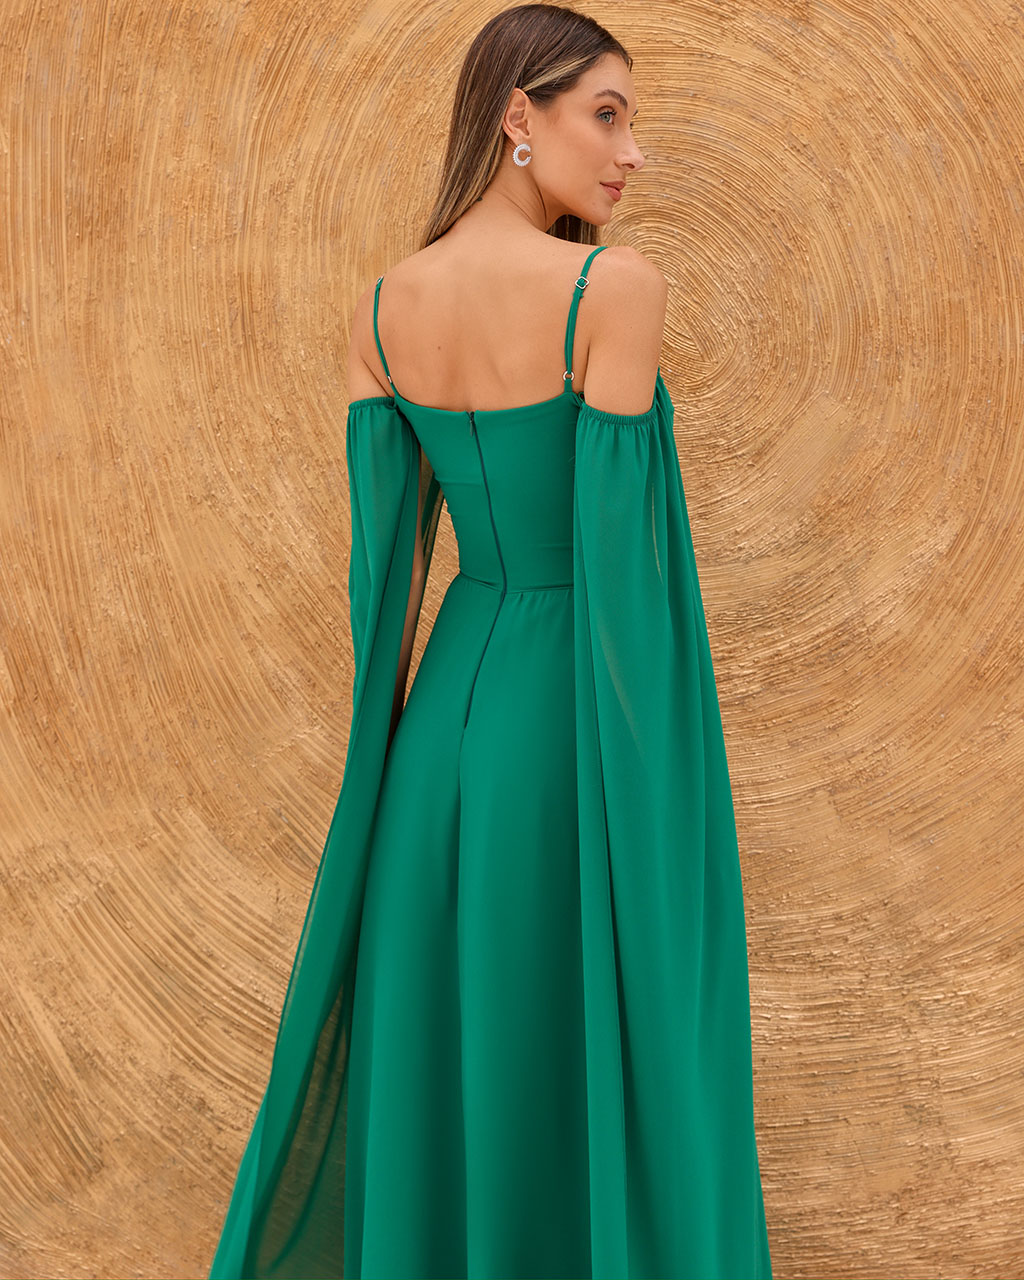 Vestido Longo Verde Velma - Empório NM